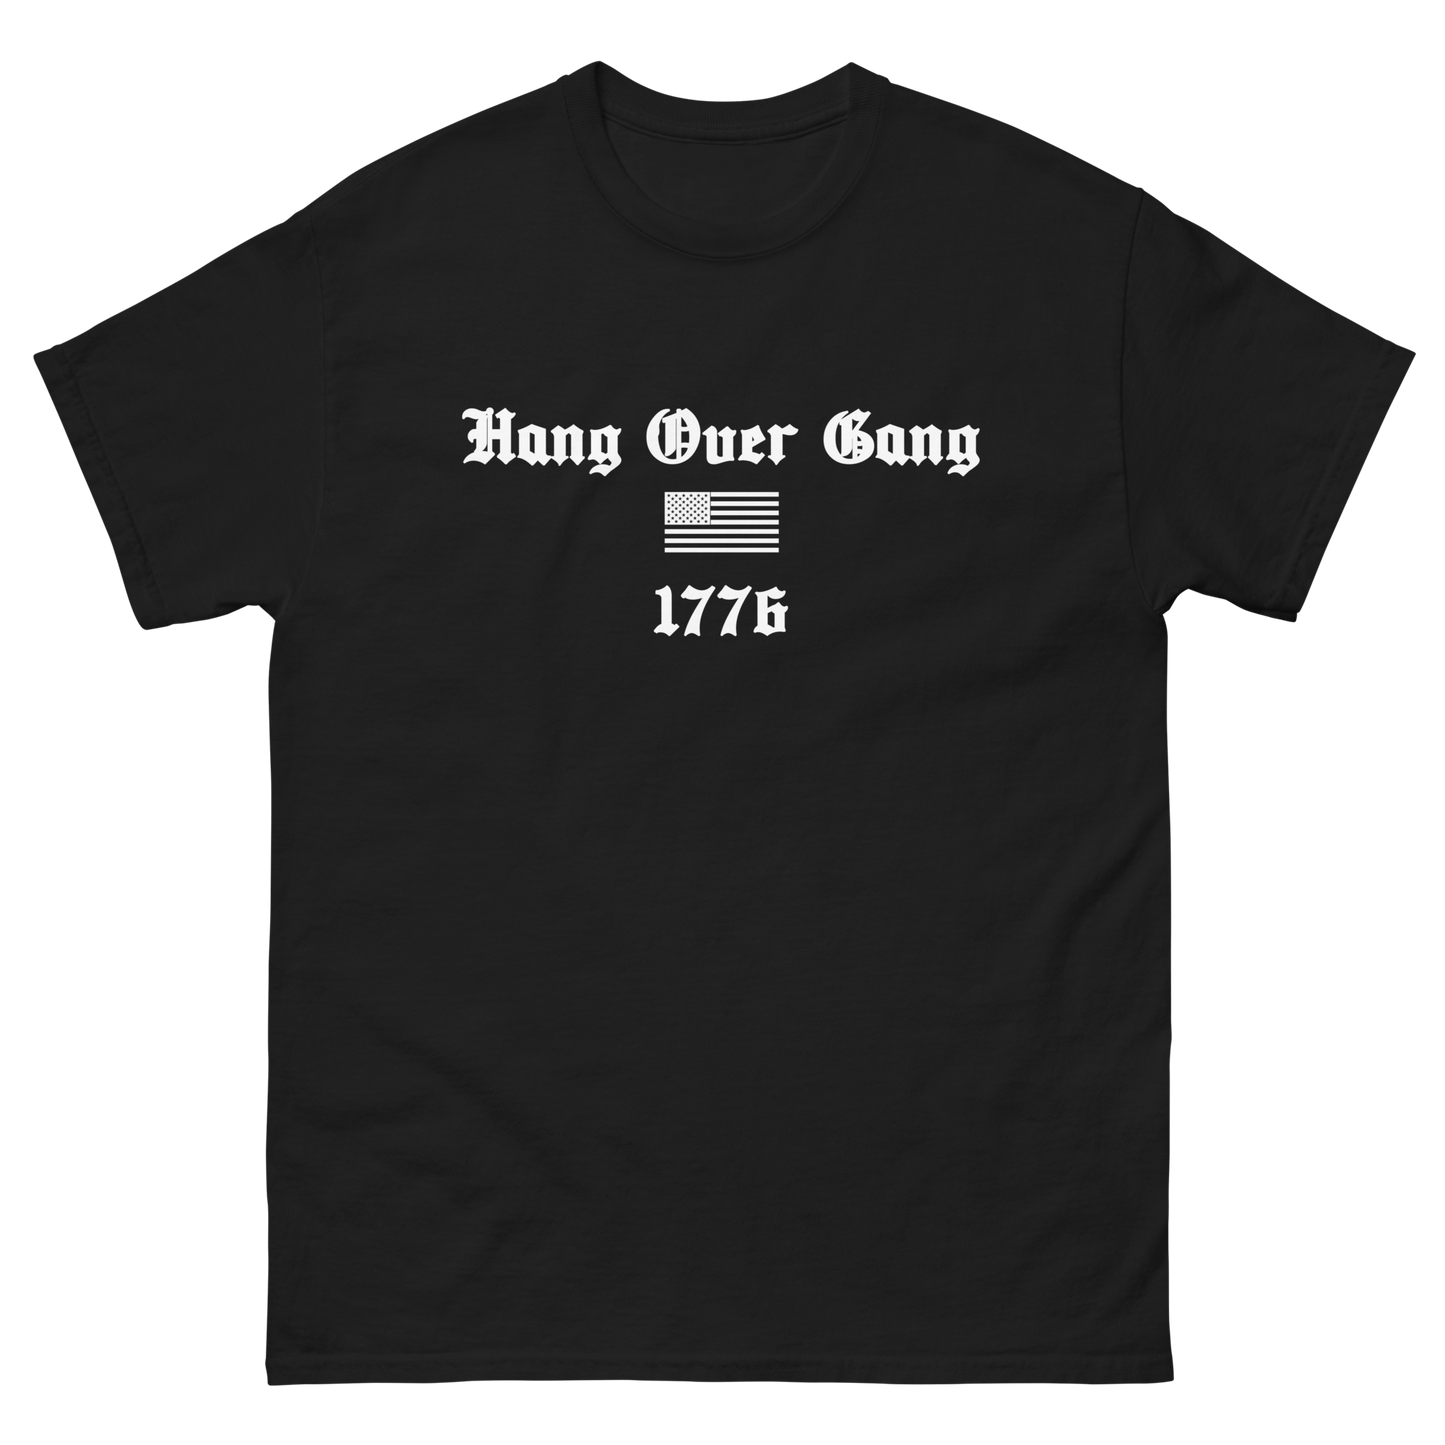 "1776" T-Shirt